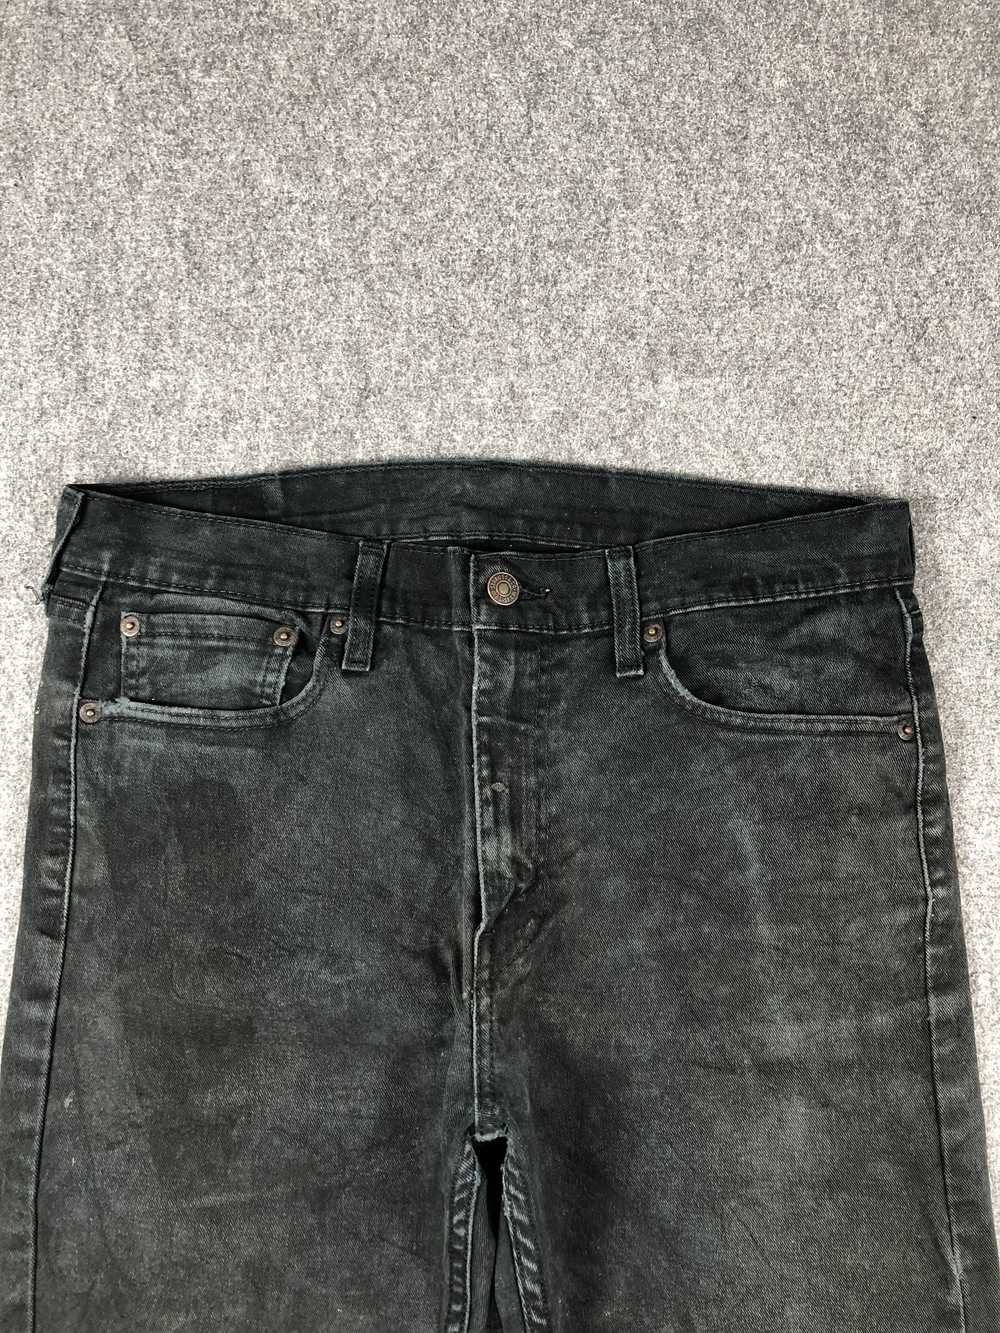 Vintage - Vintage Levis 510 Faded Black Jeans - image 2